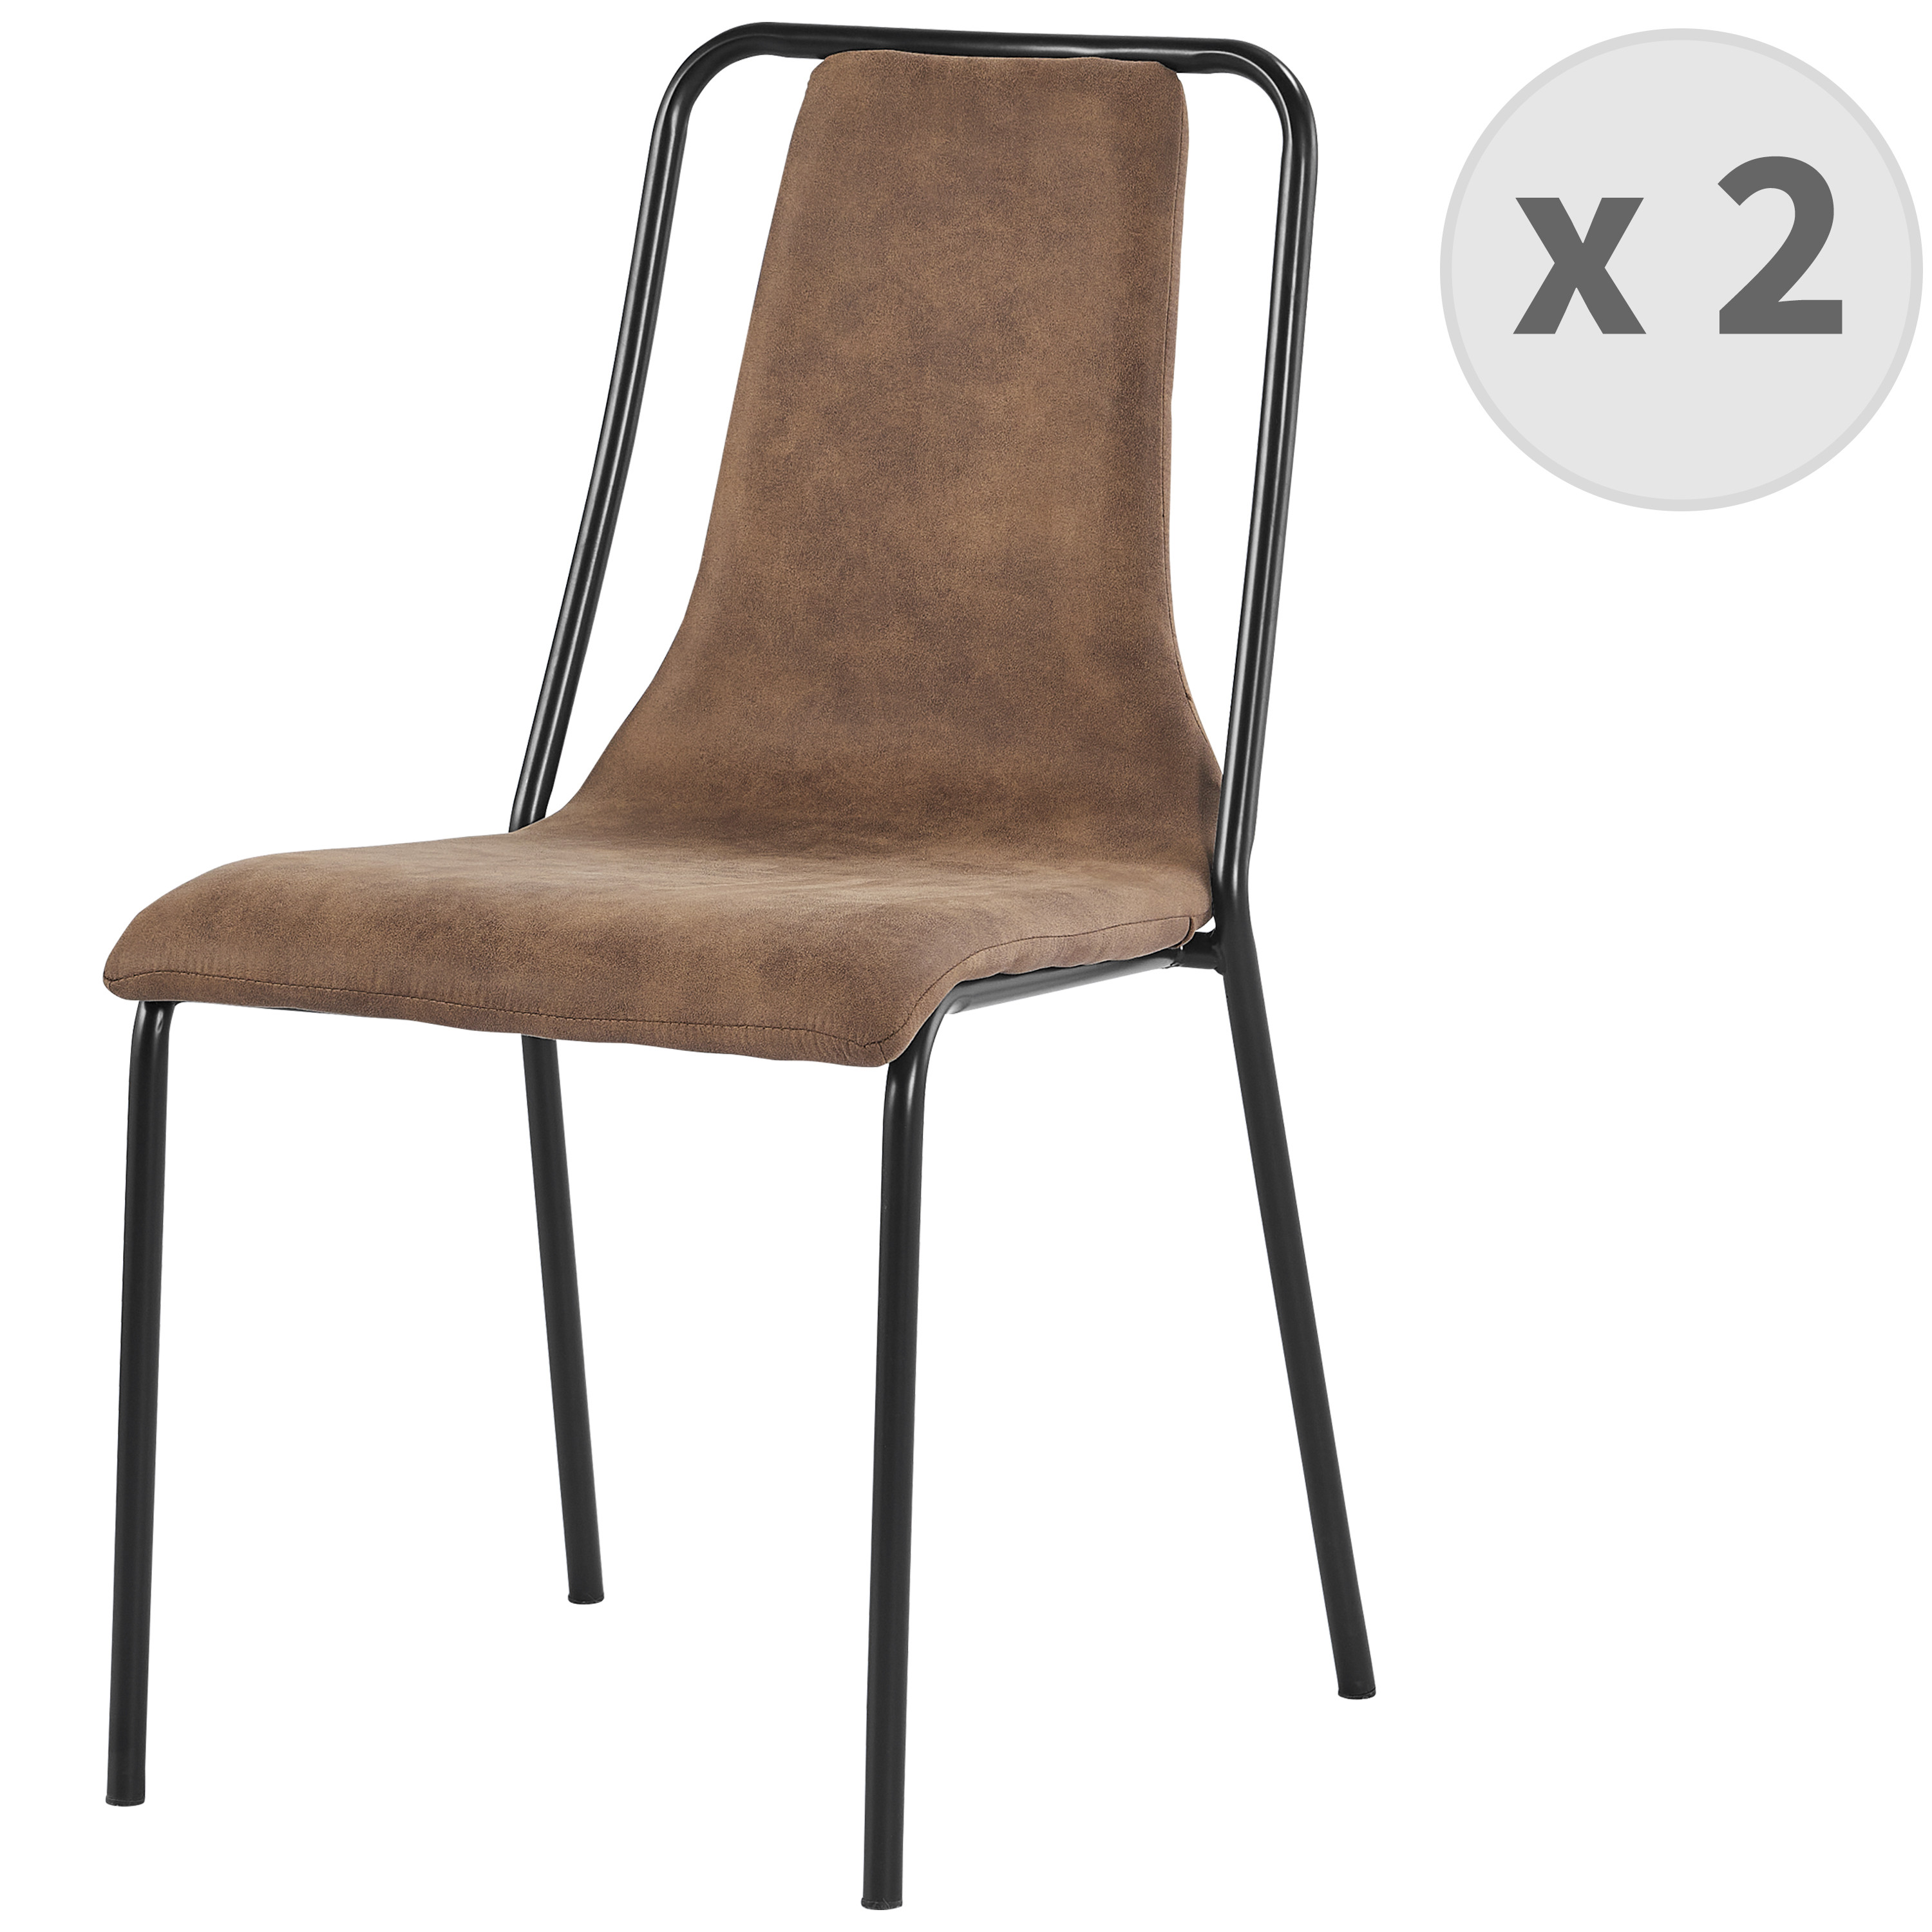 Chaise industrielle microfibre vintage maron pieds métal noir (x2)